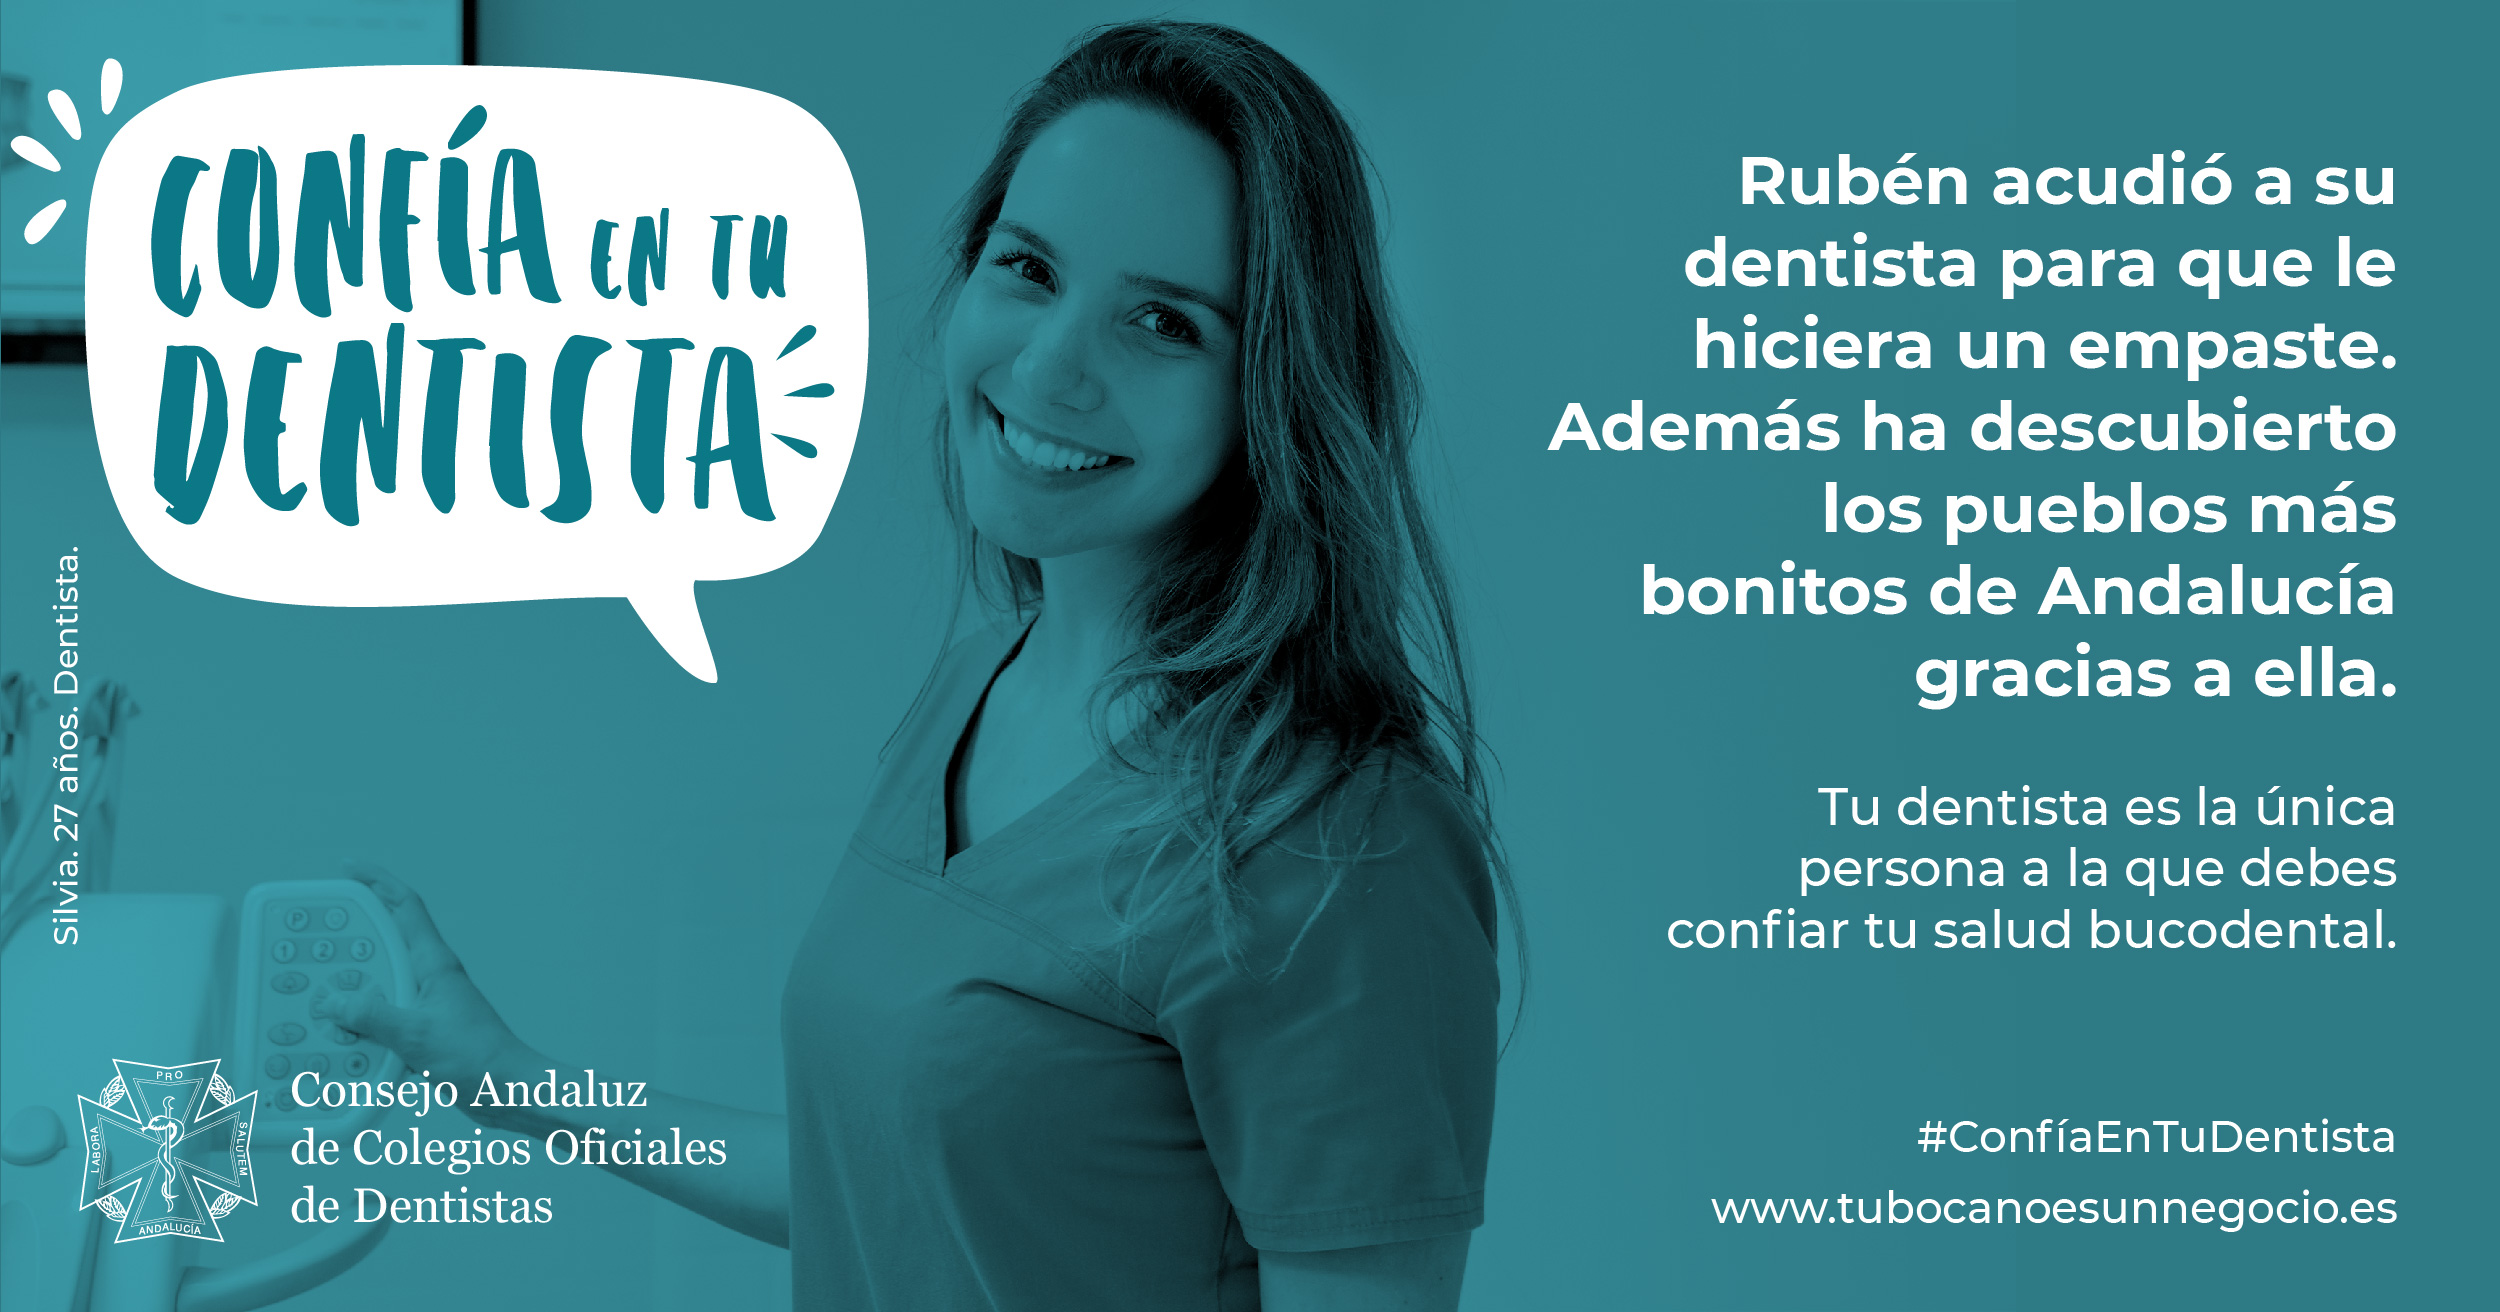 La campaña ‘Confía en tu dentista’ recorrerá Andalucía con el objetivo de concienciar sobre la importancia de las revisiones periódicas de la mano de profesionales colegiados. FOTO: Consejo Andaluz de Colegios Oficiales de Dentistas